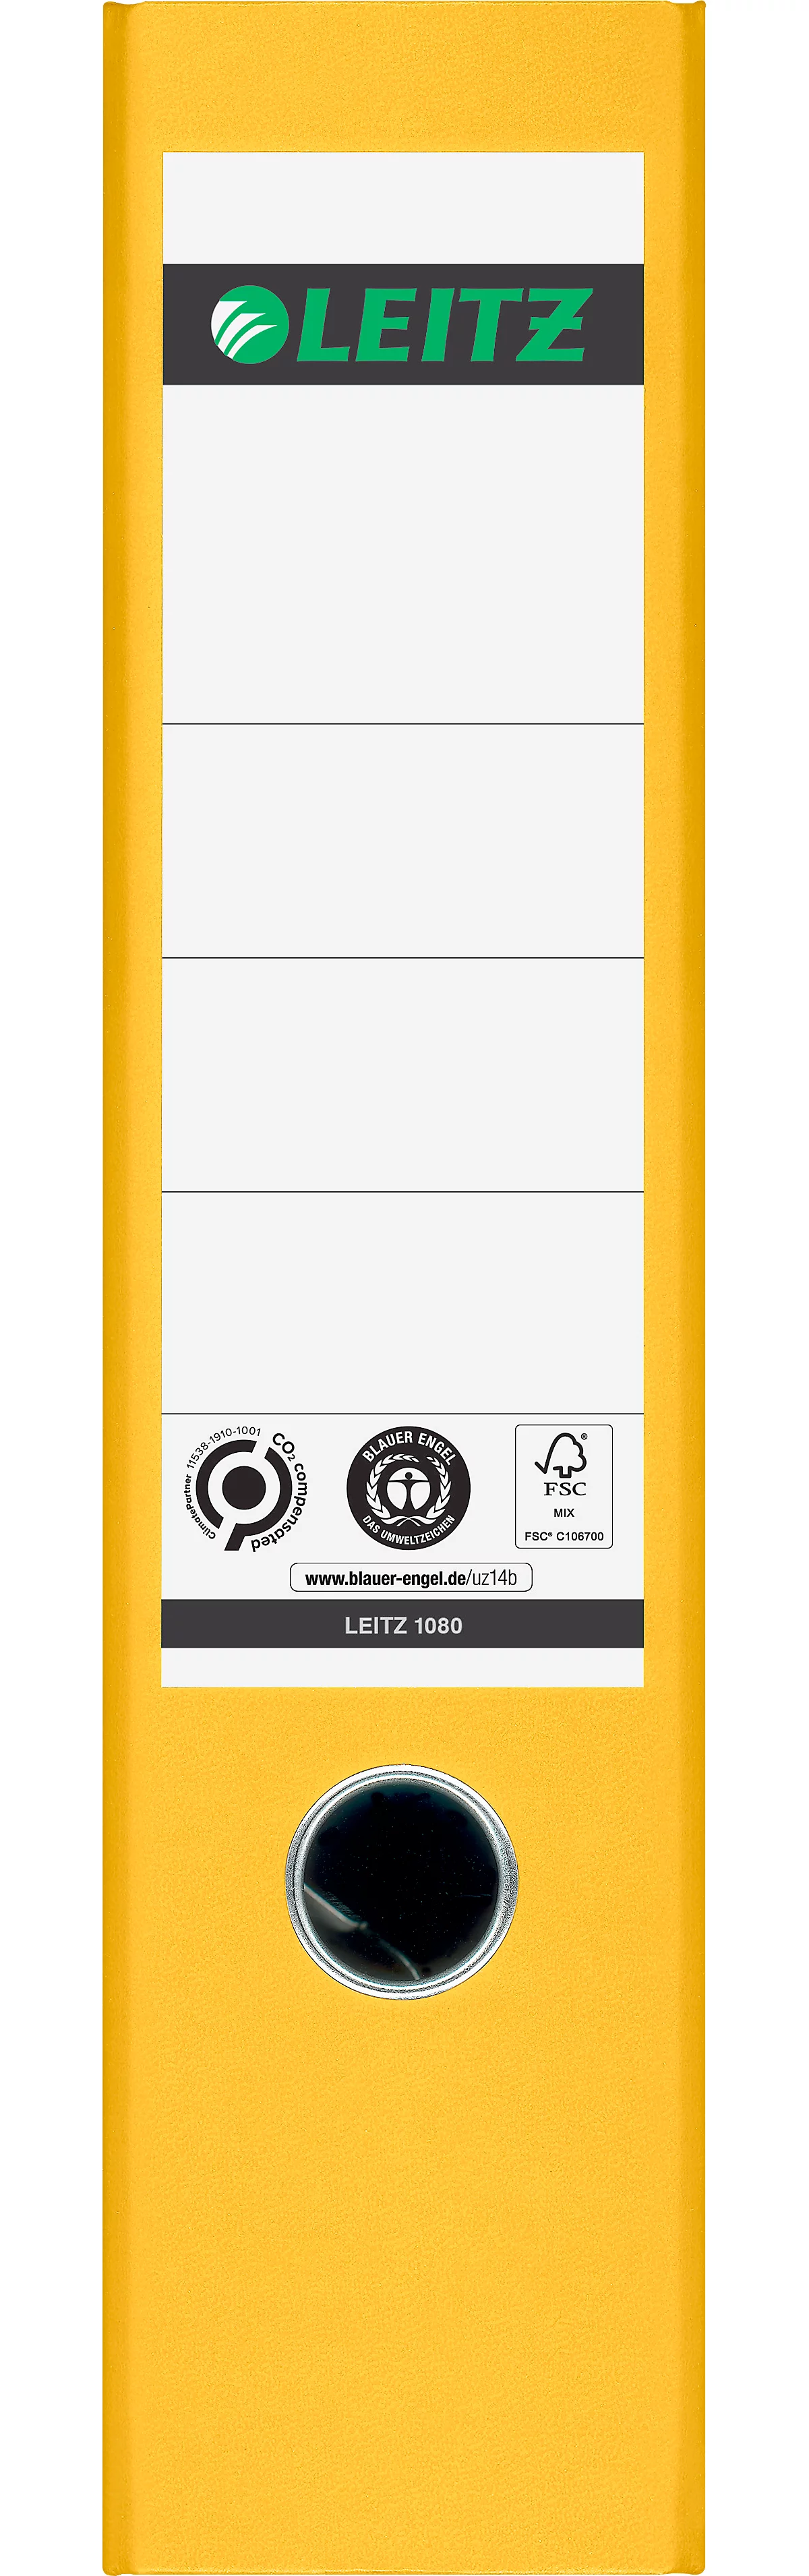 LEITZ® Carpeta 1080, DIN A4, ancho de lomo 80 mm, agujero para los dedos, etiqueta pegada en el lomo, clima neutro, cartón duro, 1 unidad, amarillo